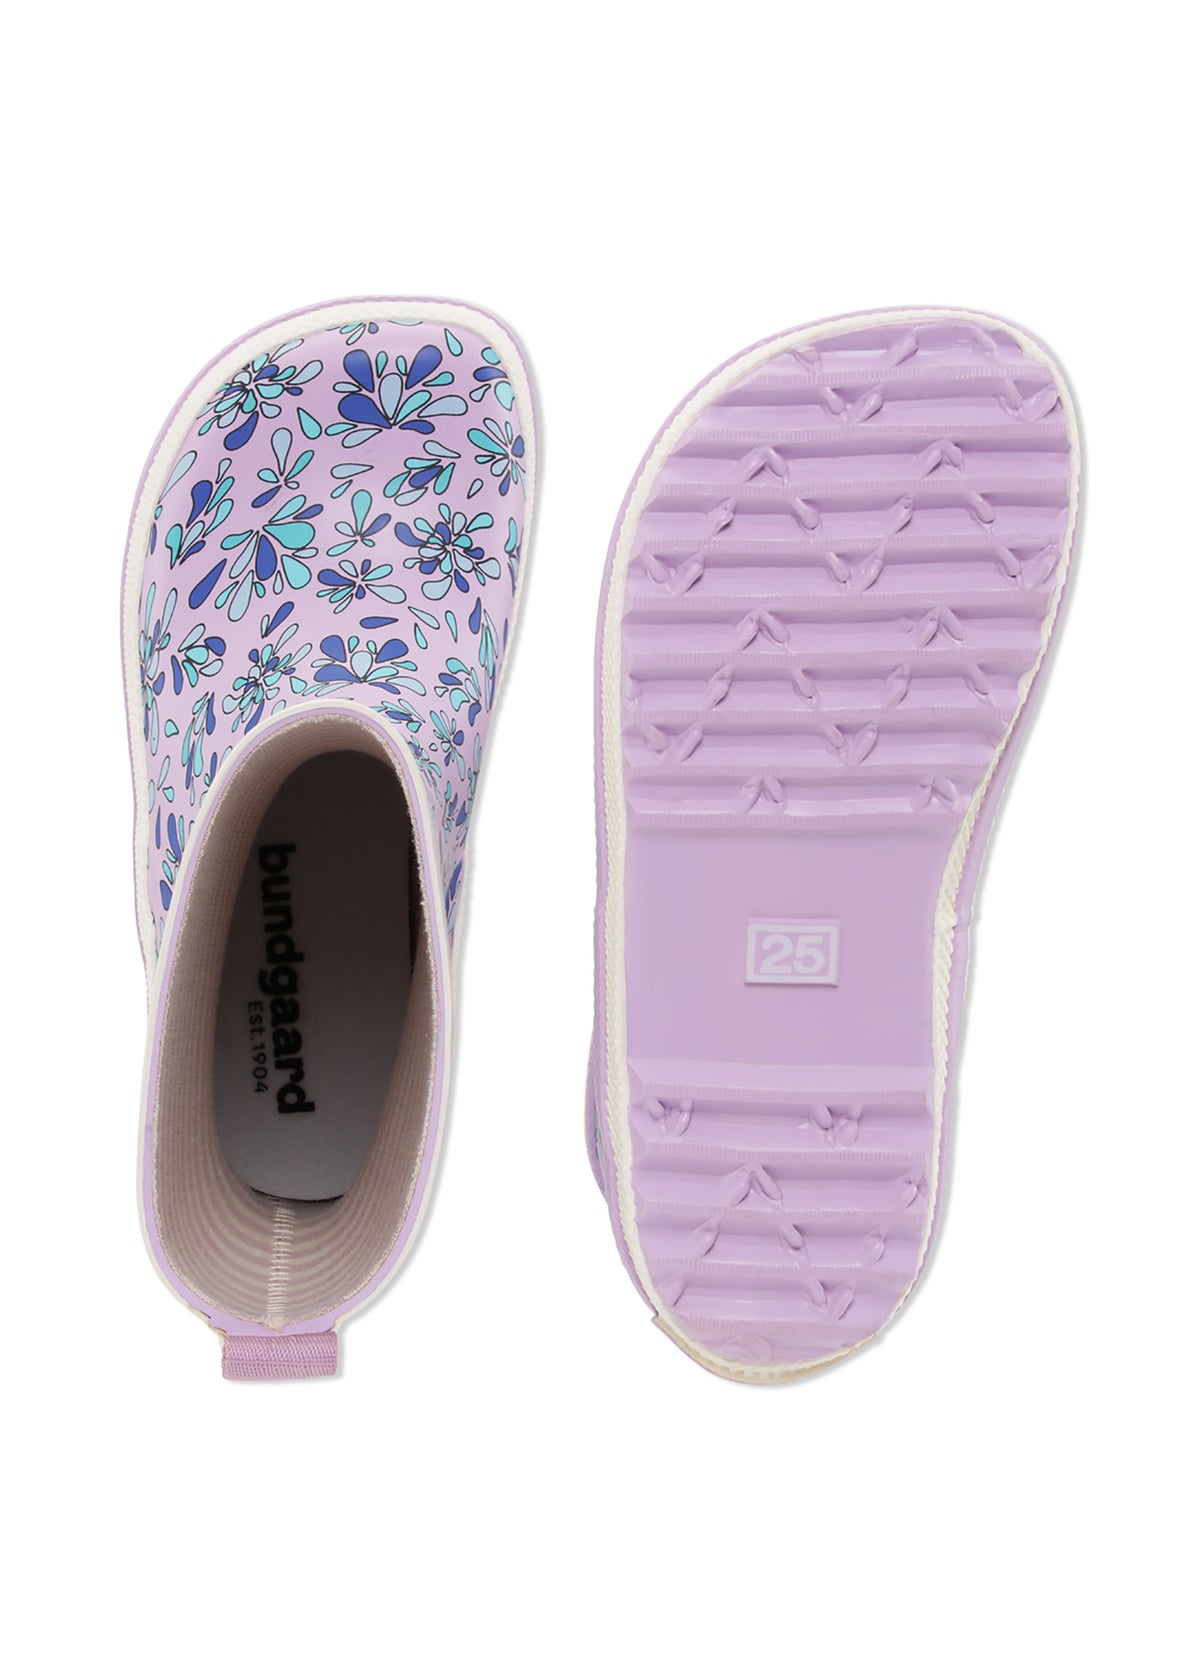 Kumisaappaat - Lilac Splash, kuvioita vaaleanvioletilla pohjalla, Bundgaard Zero Heel